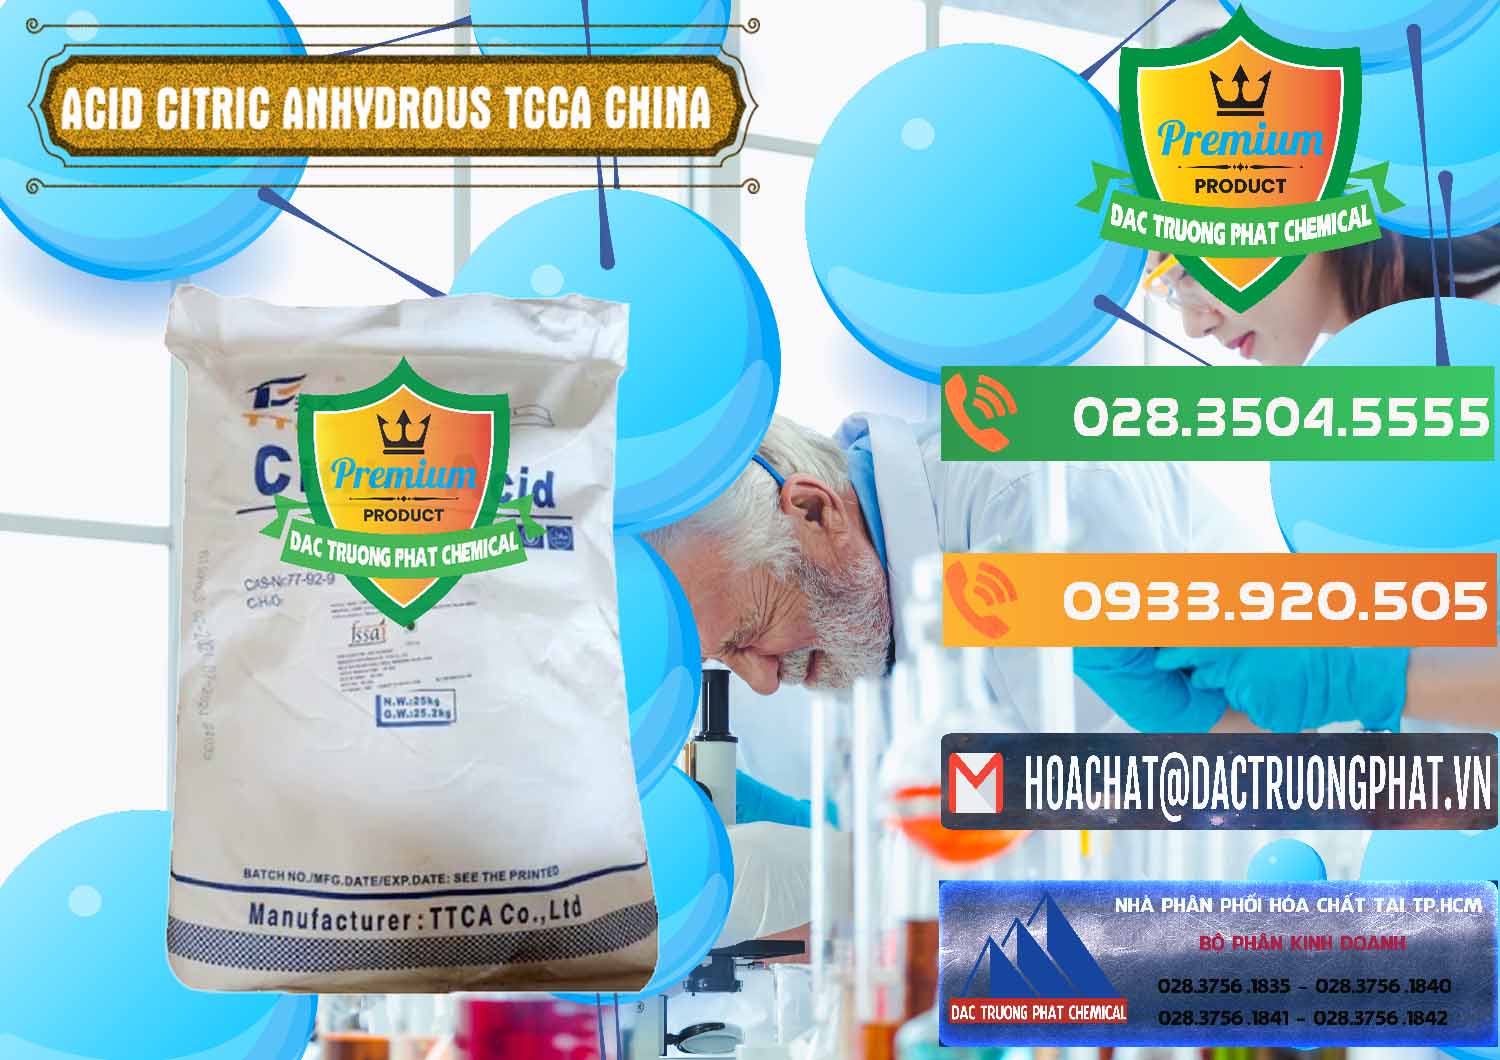 Cty chuyên kinh doanh _ bán Acid Citric - Axit Citric Anhydrous TCCA Trung Quốc China - 0442 - Cung cấp & bán hóa chất tại TP.HCM - hoachatxulynuoc.com.vn